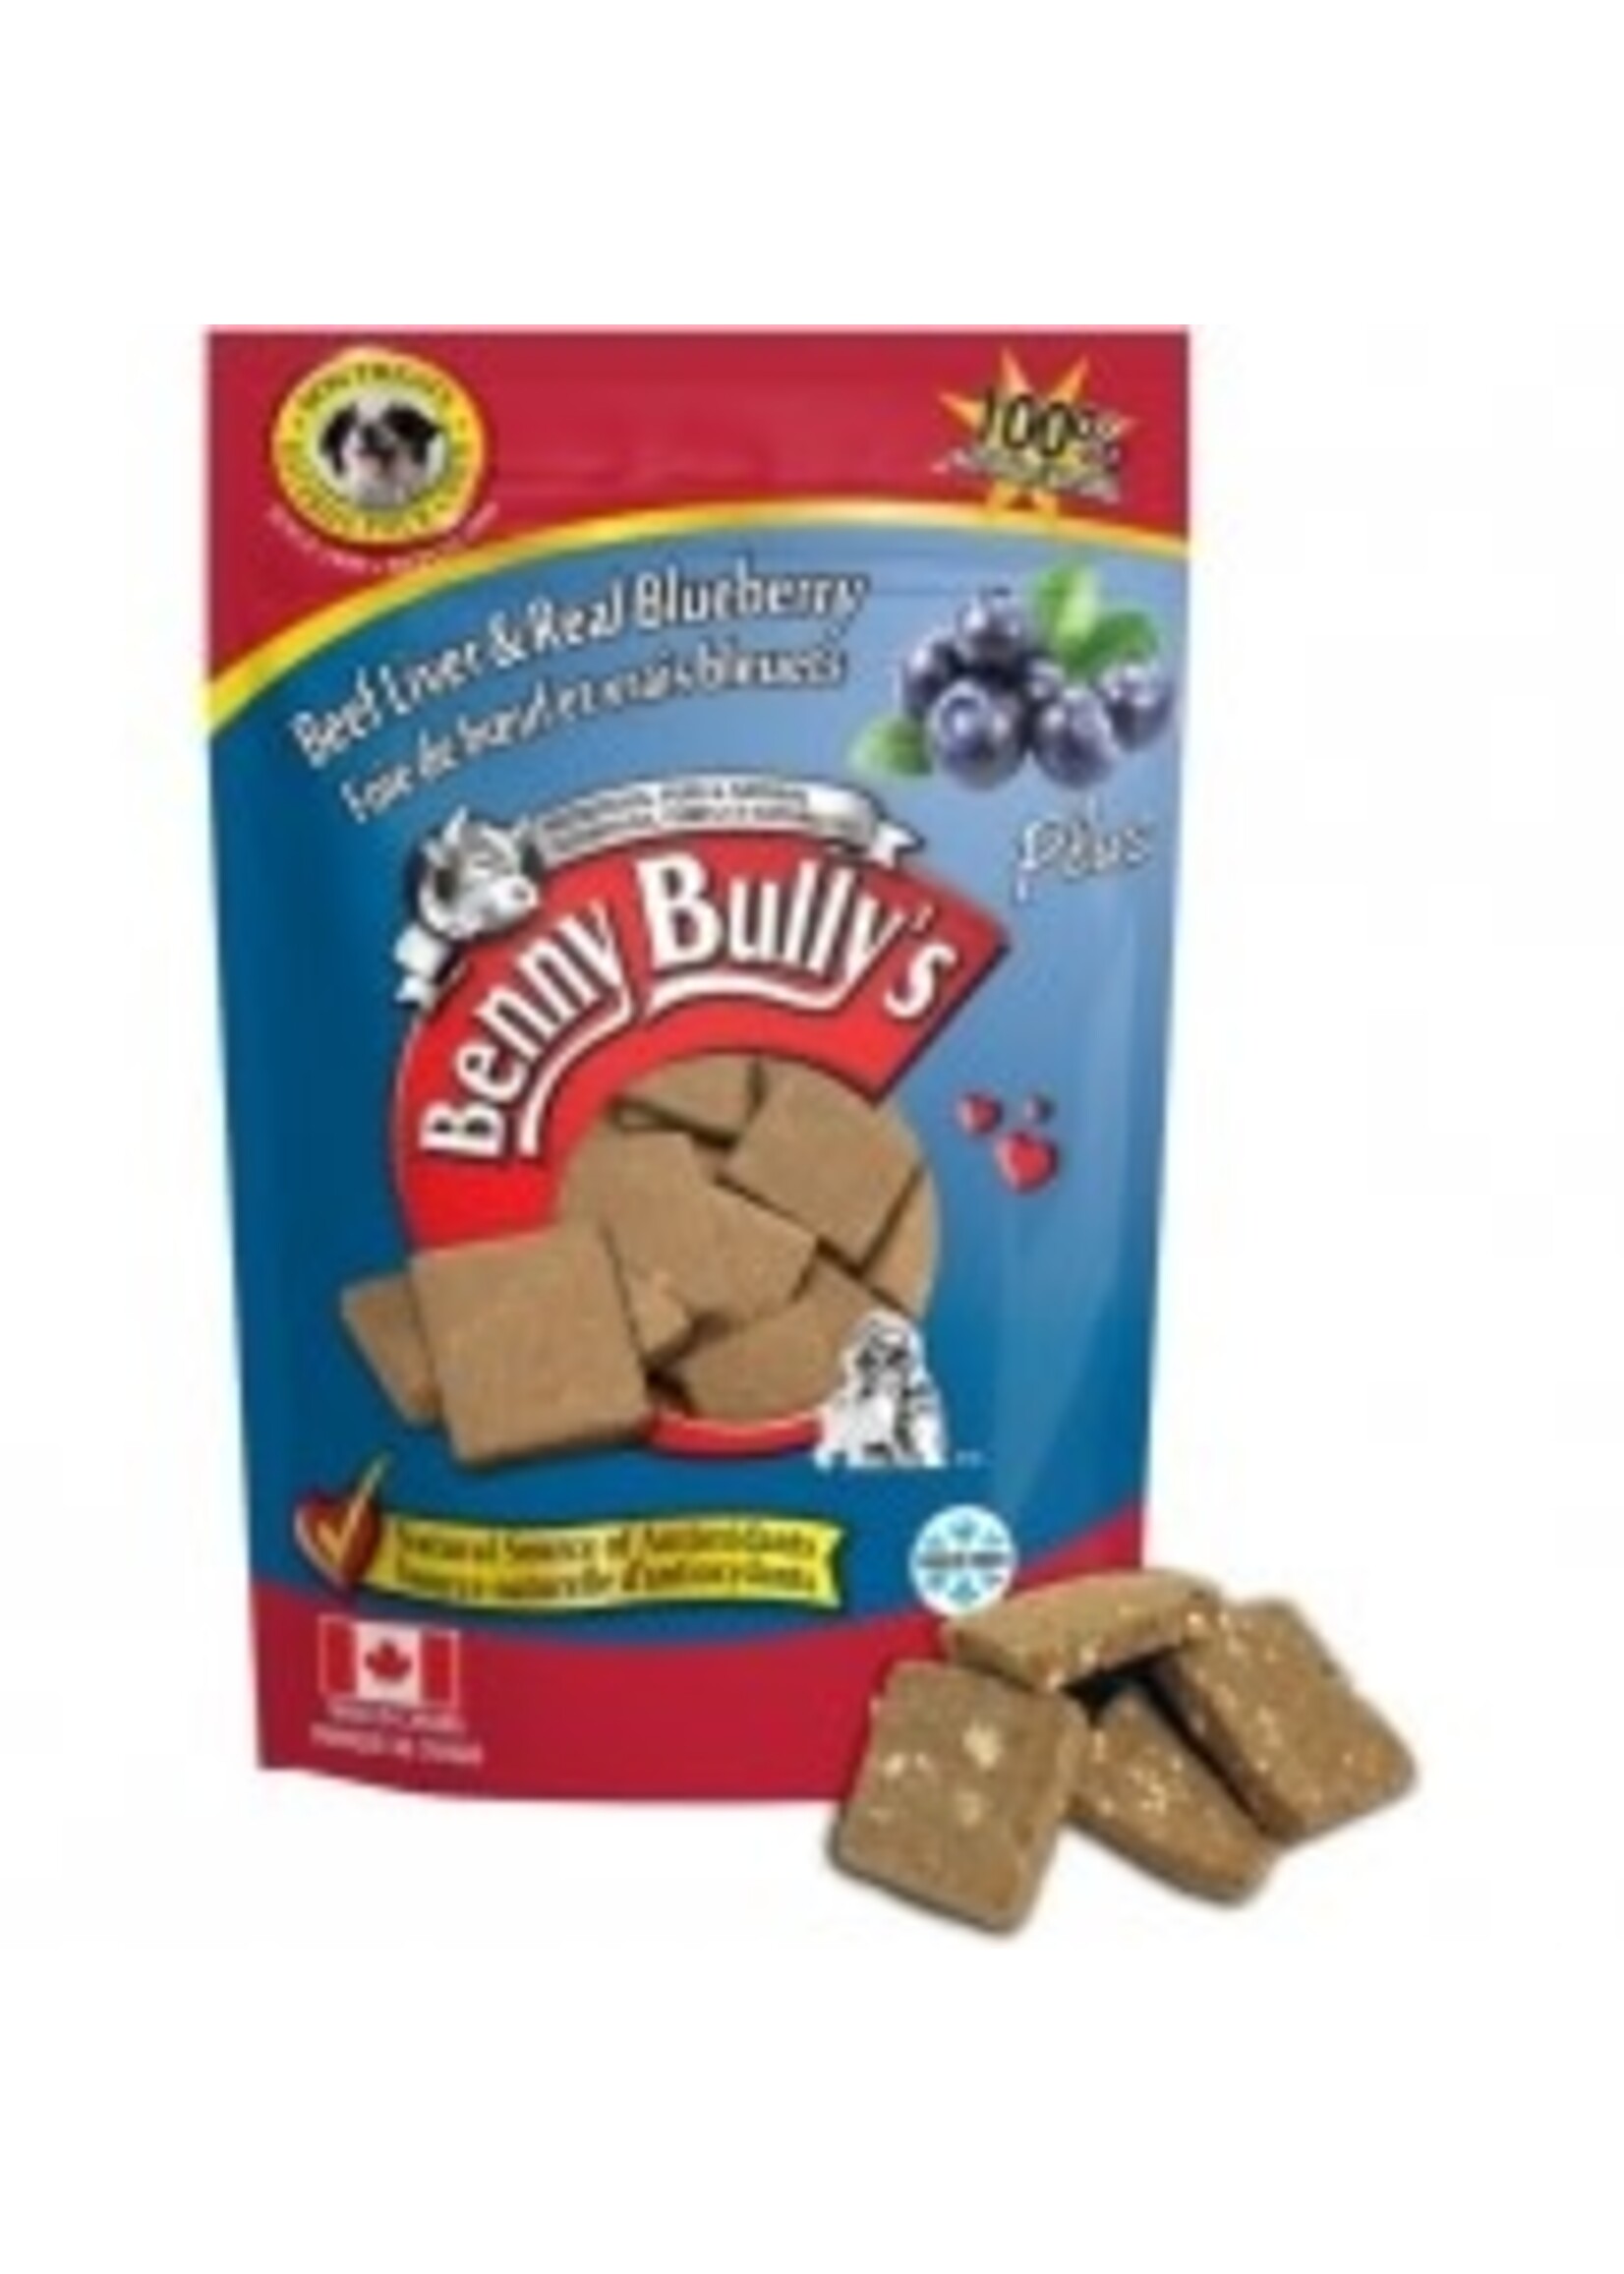 Benny Bully's Benny Bully's Dog Liver Plus Blueberry 58g